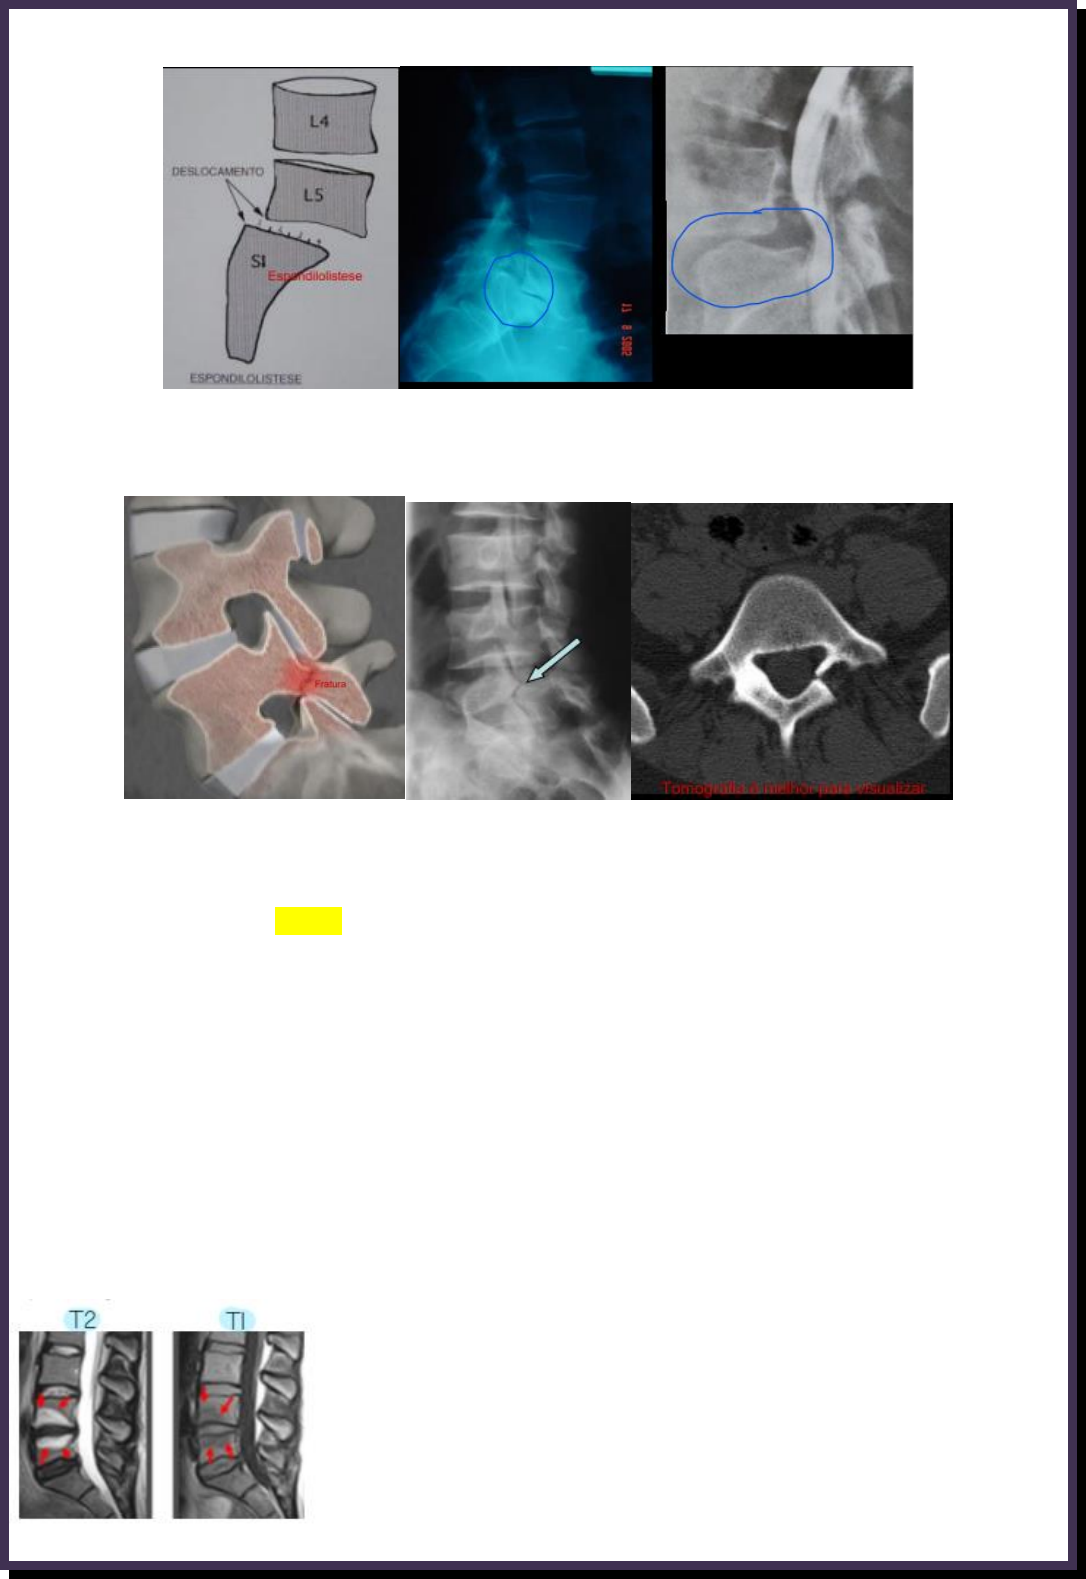 Ressonância magnética (T1) evidencia hérnia discal extrusa L4-L5